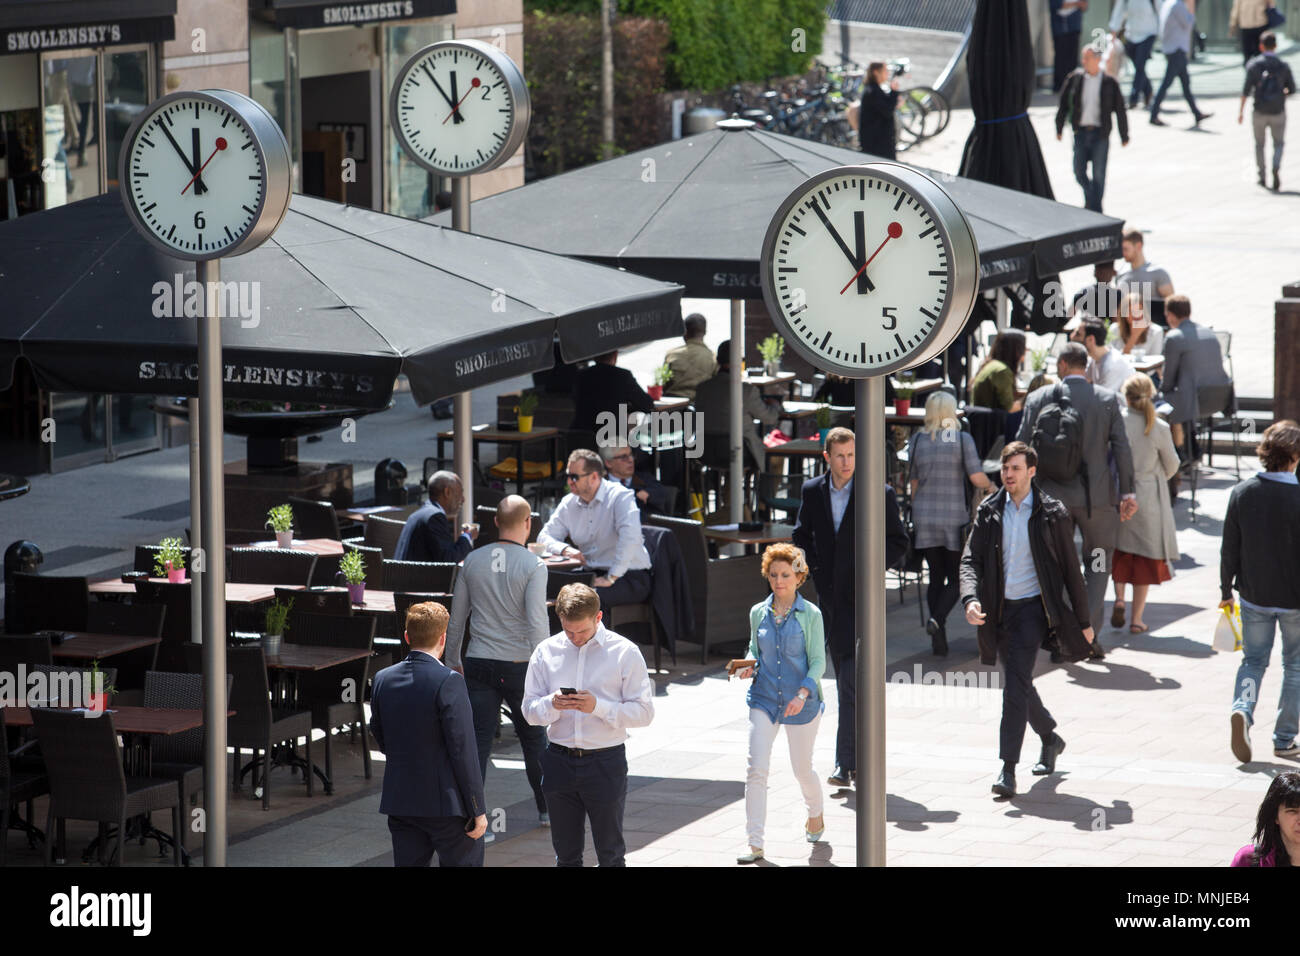 Canary Wharf, horloges indiquent le moment juste avant 12h à l'extérieur de  la station de métro avec les employés autour de la mouture le soleil brille  Photo Stock - Alamy